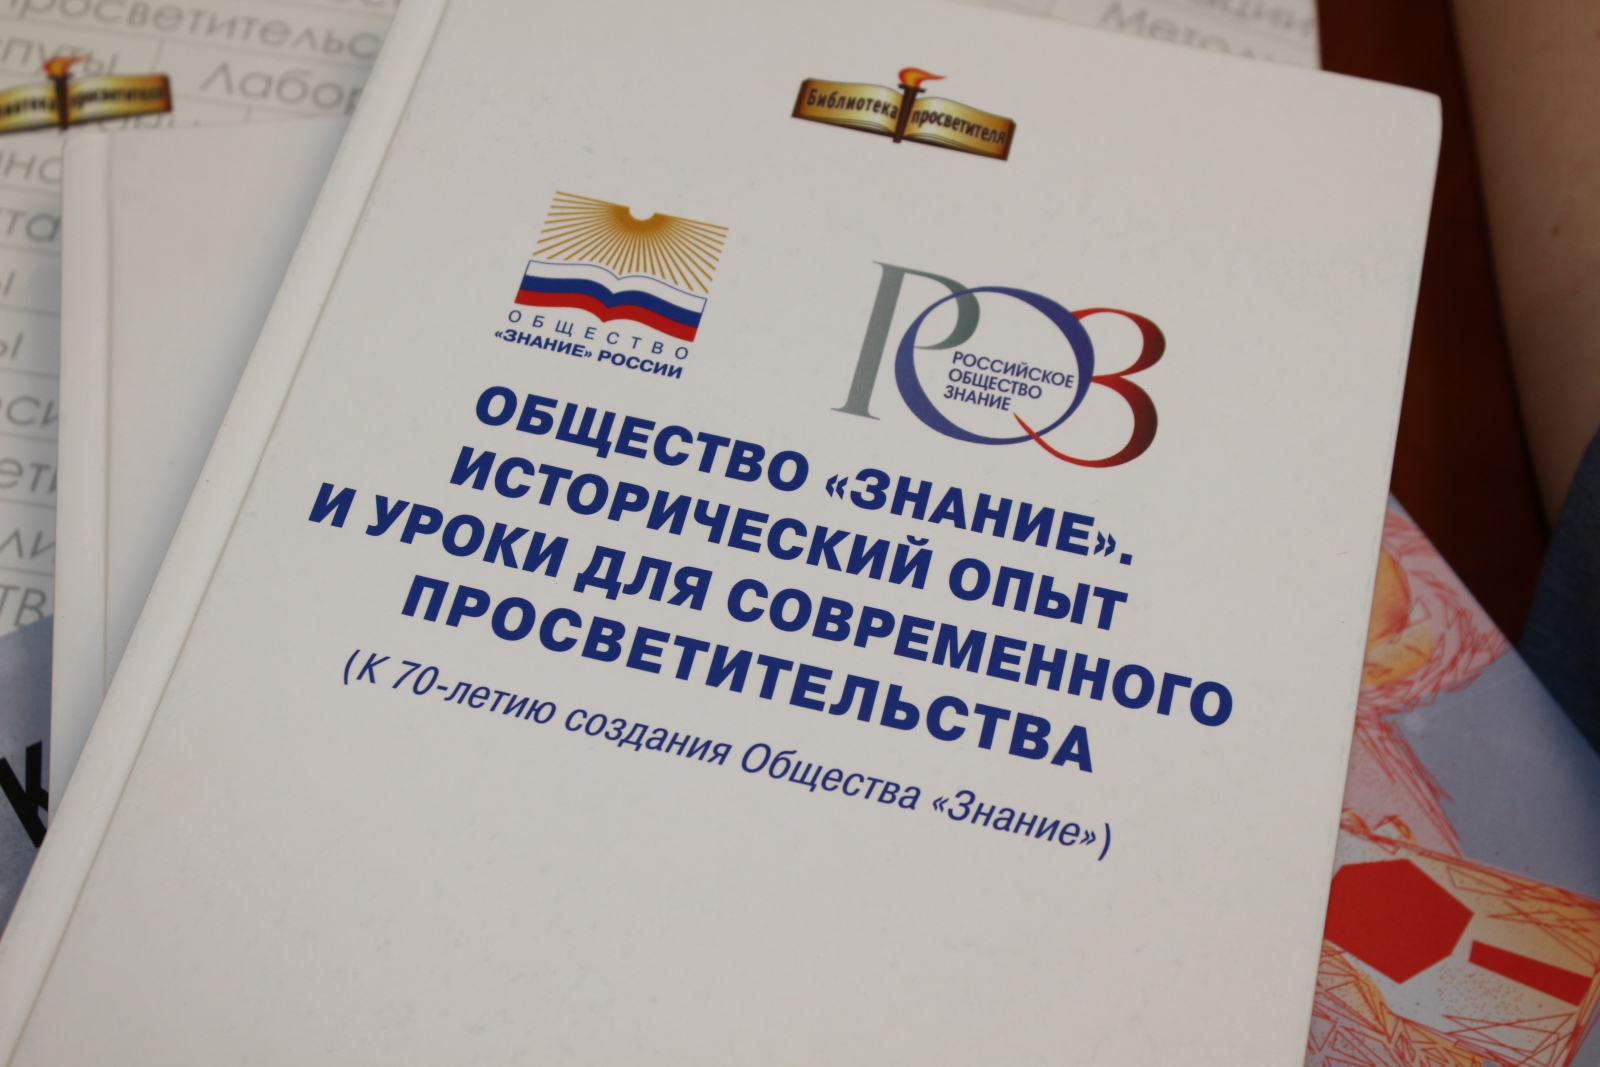 Открытое общество знание. Российское общество знание. Российское общество знание эмблема. Российское общество знаник. Российское общество знание логотип новый.